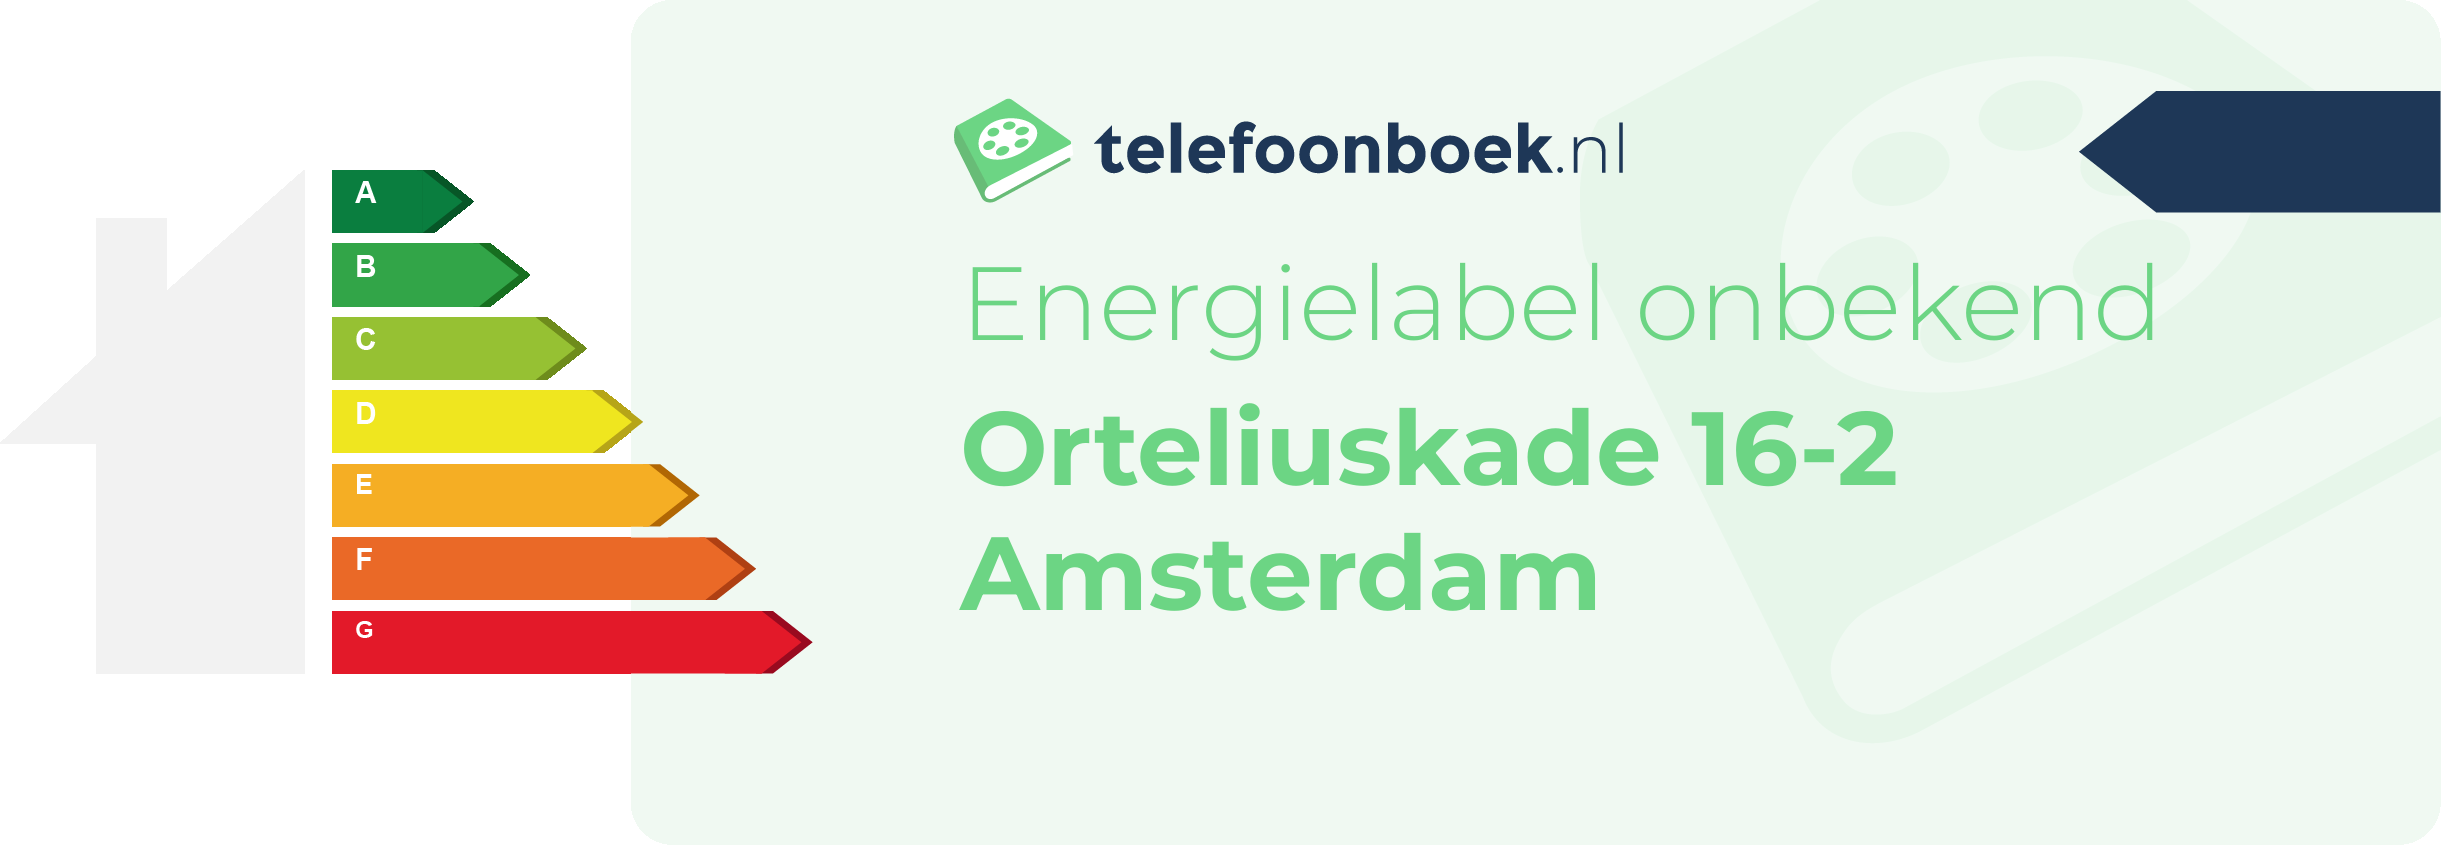 Energielabel Orteliuskade 16-2 Amsterdam